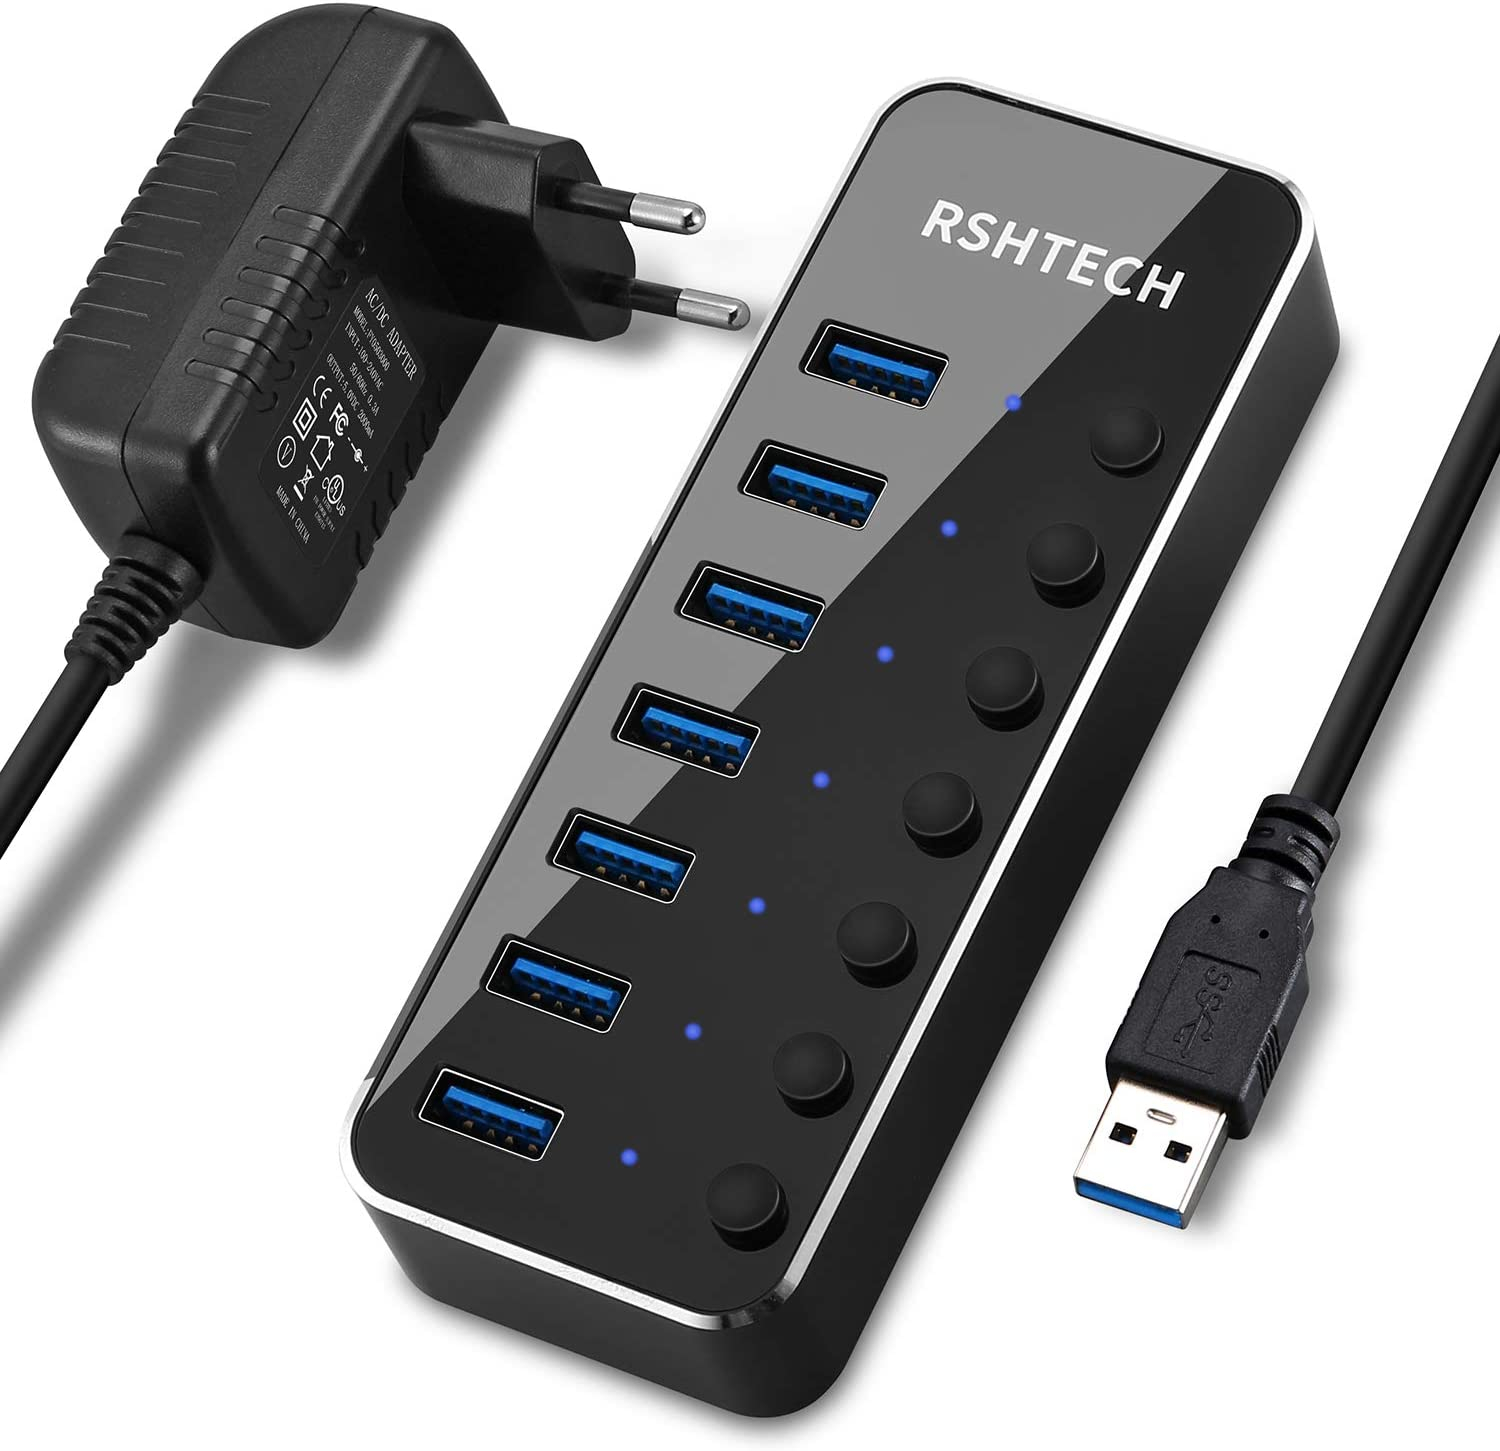 Hub USB 3.0 con 7 porte e adattatore di alimentazione da 5 V in promo su Amazon con COUPON